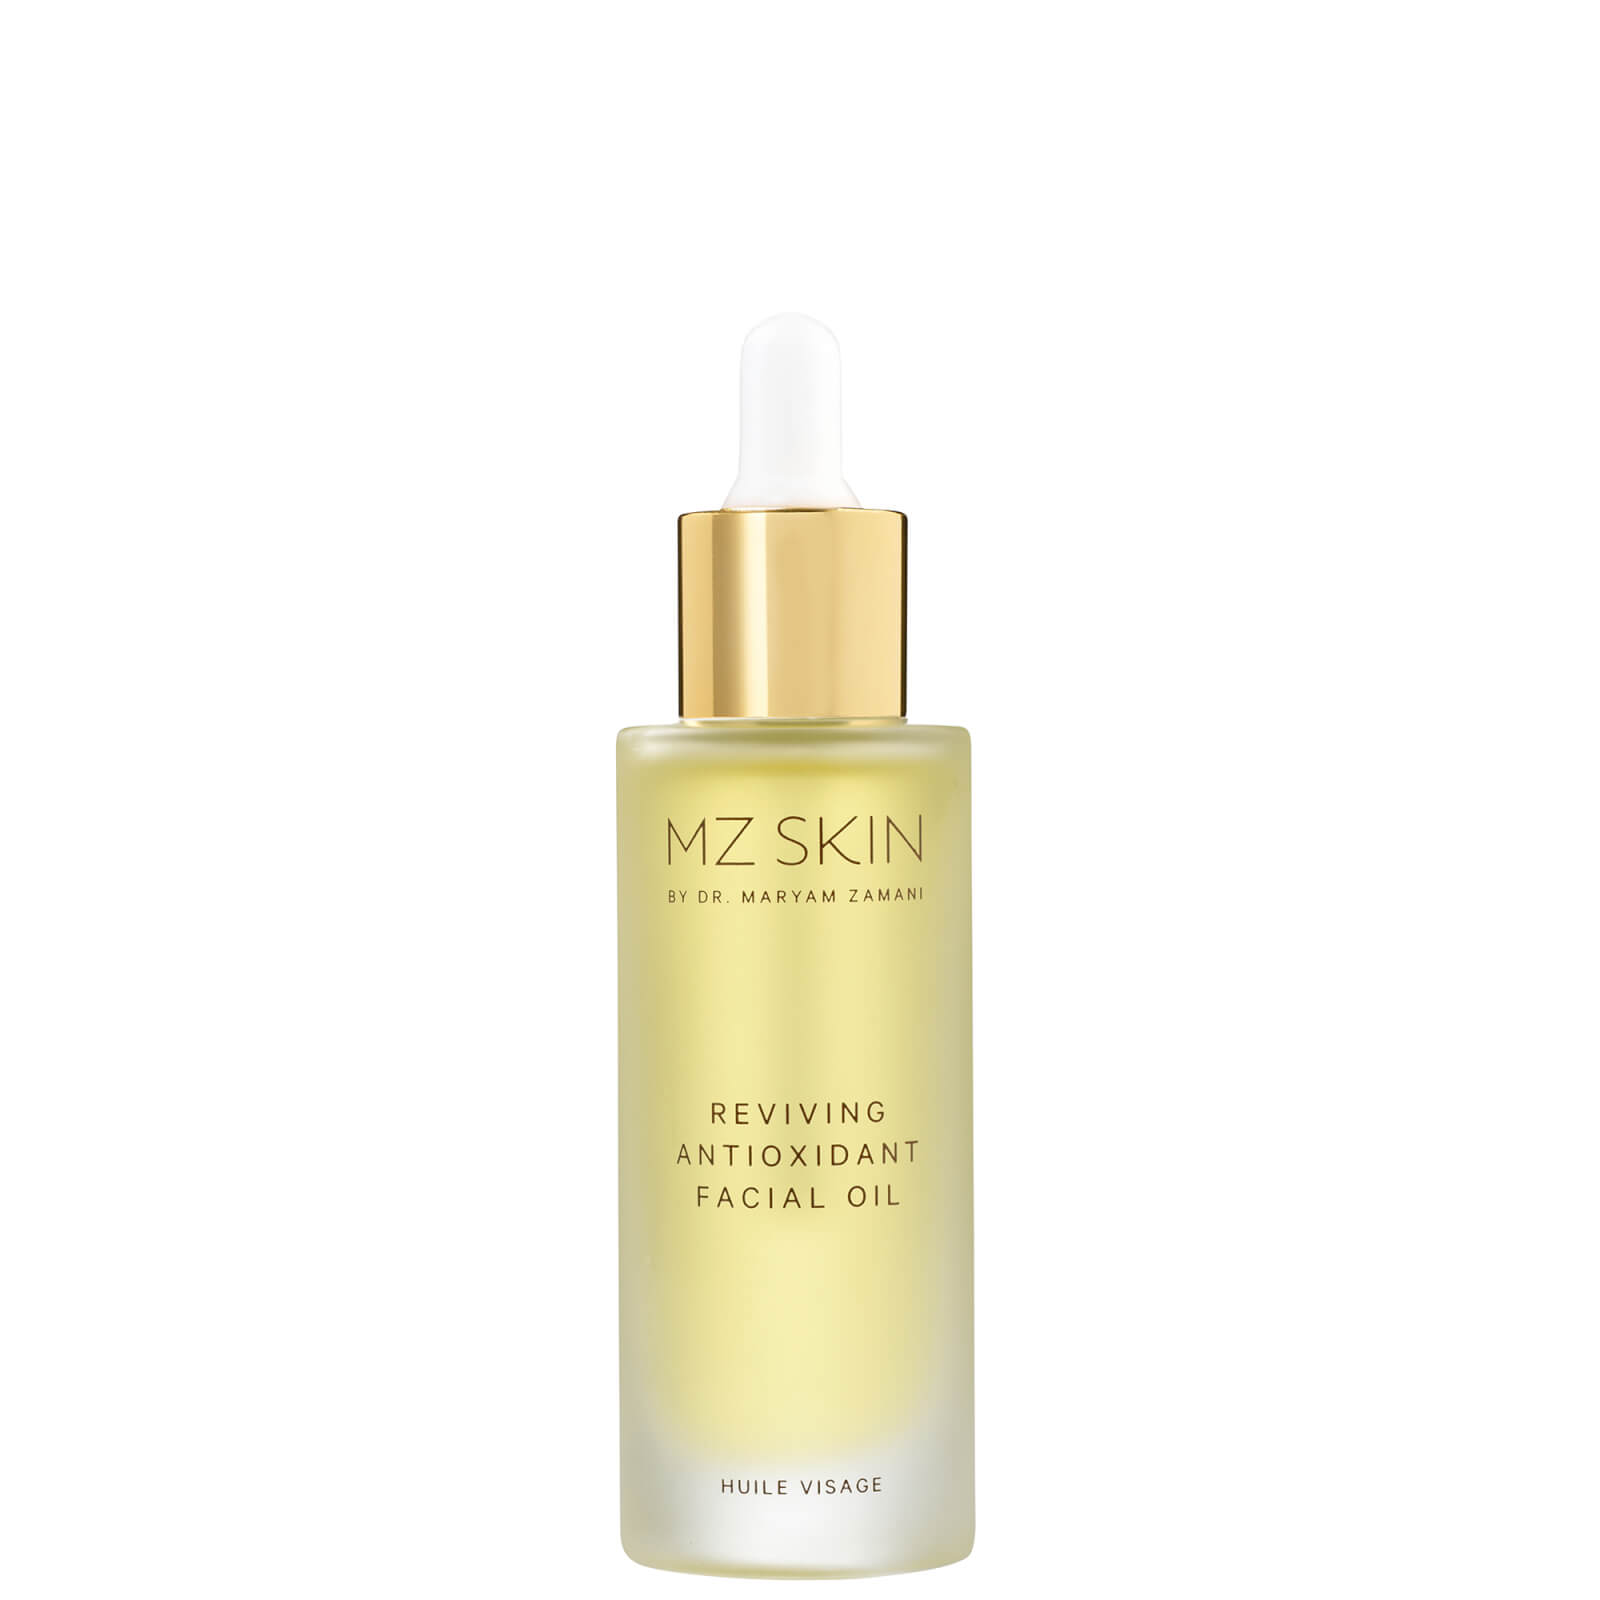 Shop Mz Skin Reviving Antioxidant Facial Oil 30ml